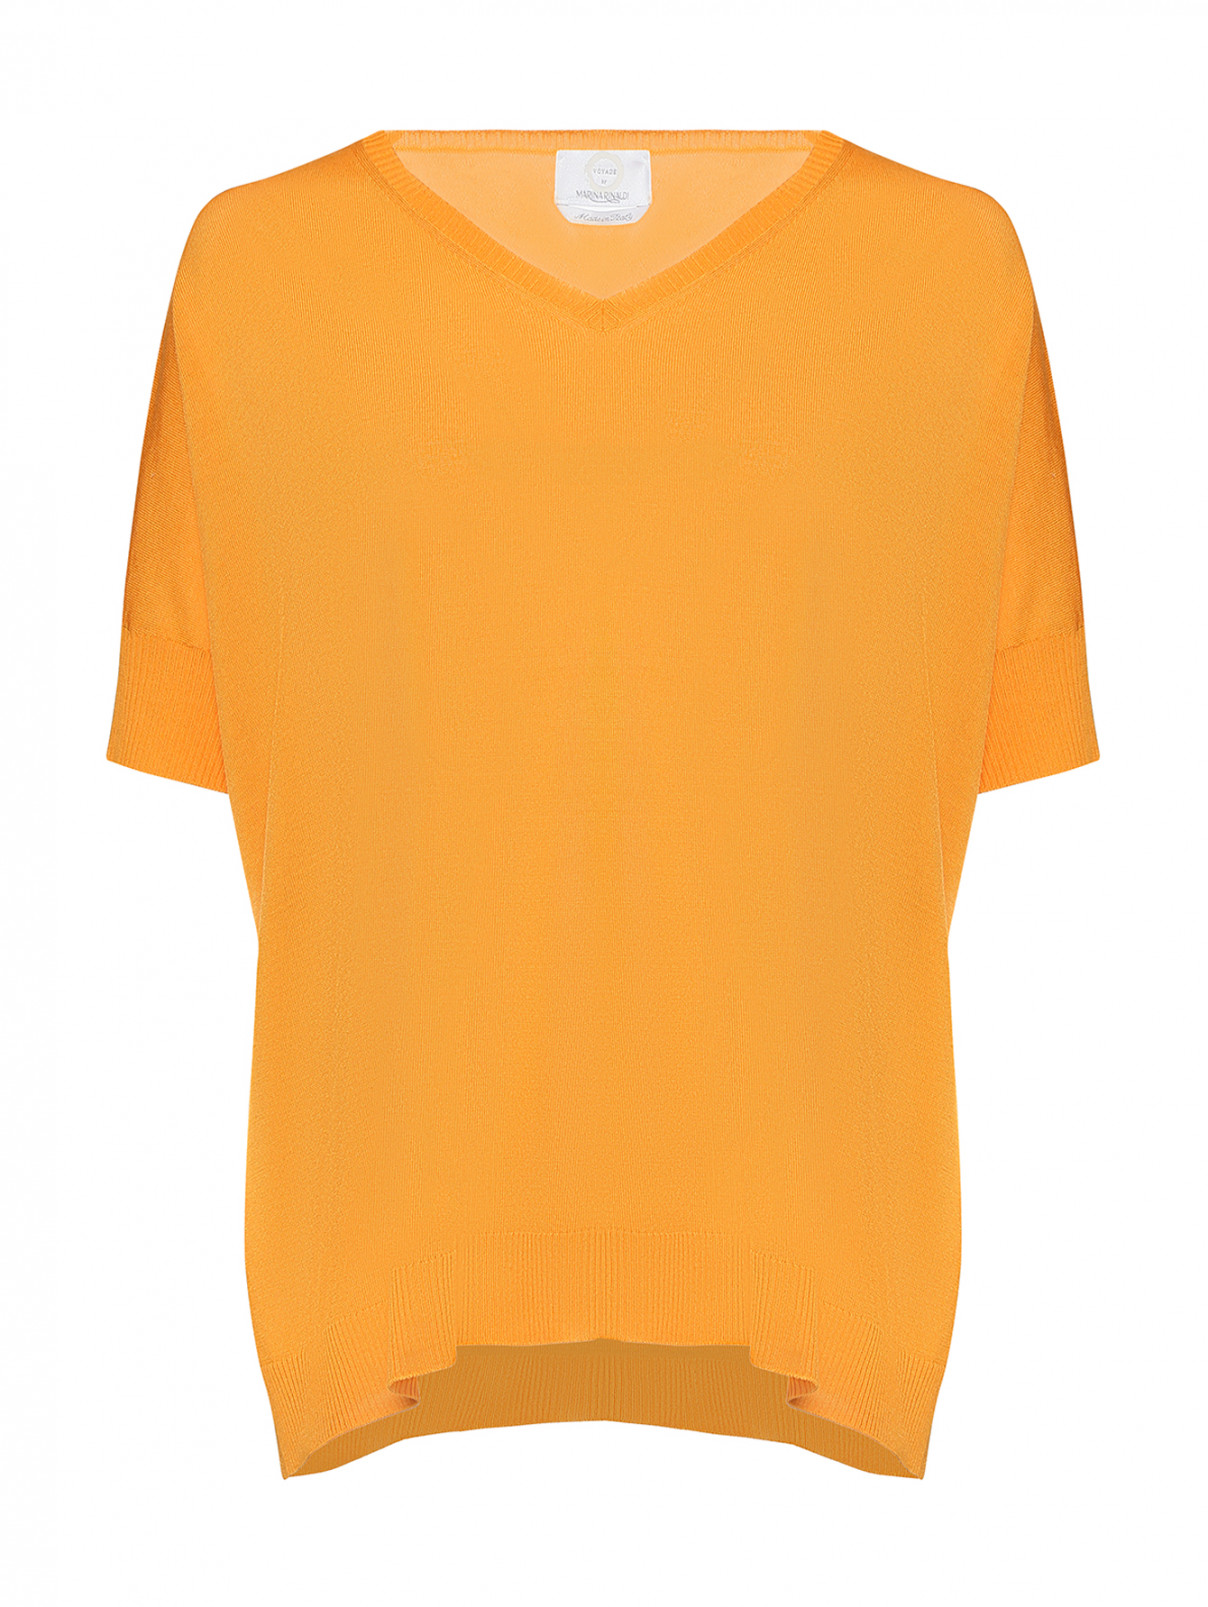 Джемпер удлиненный из хлопка и вискозы Marina Rinaldi  –  Общий вид  – Цвет:  Желтый